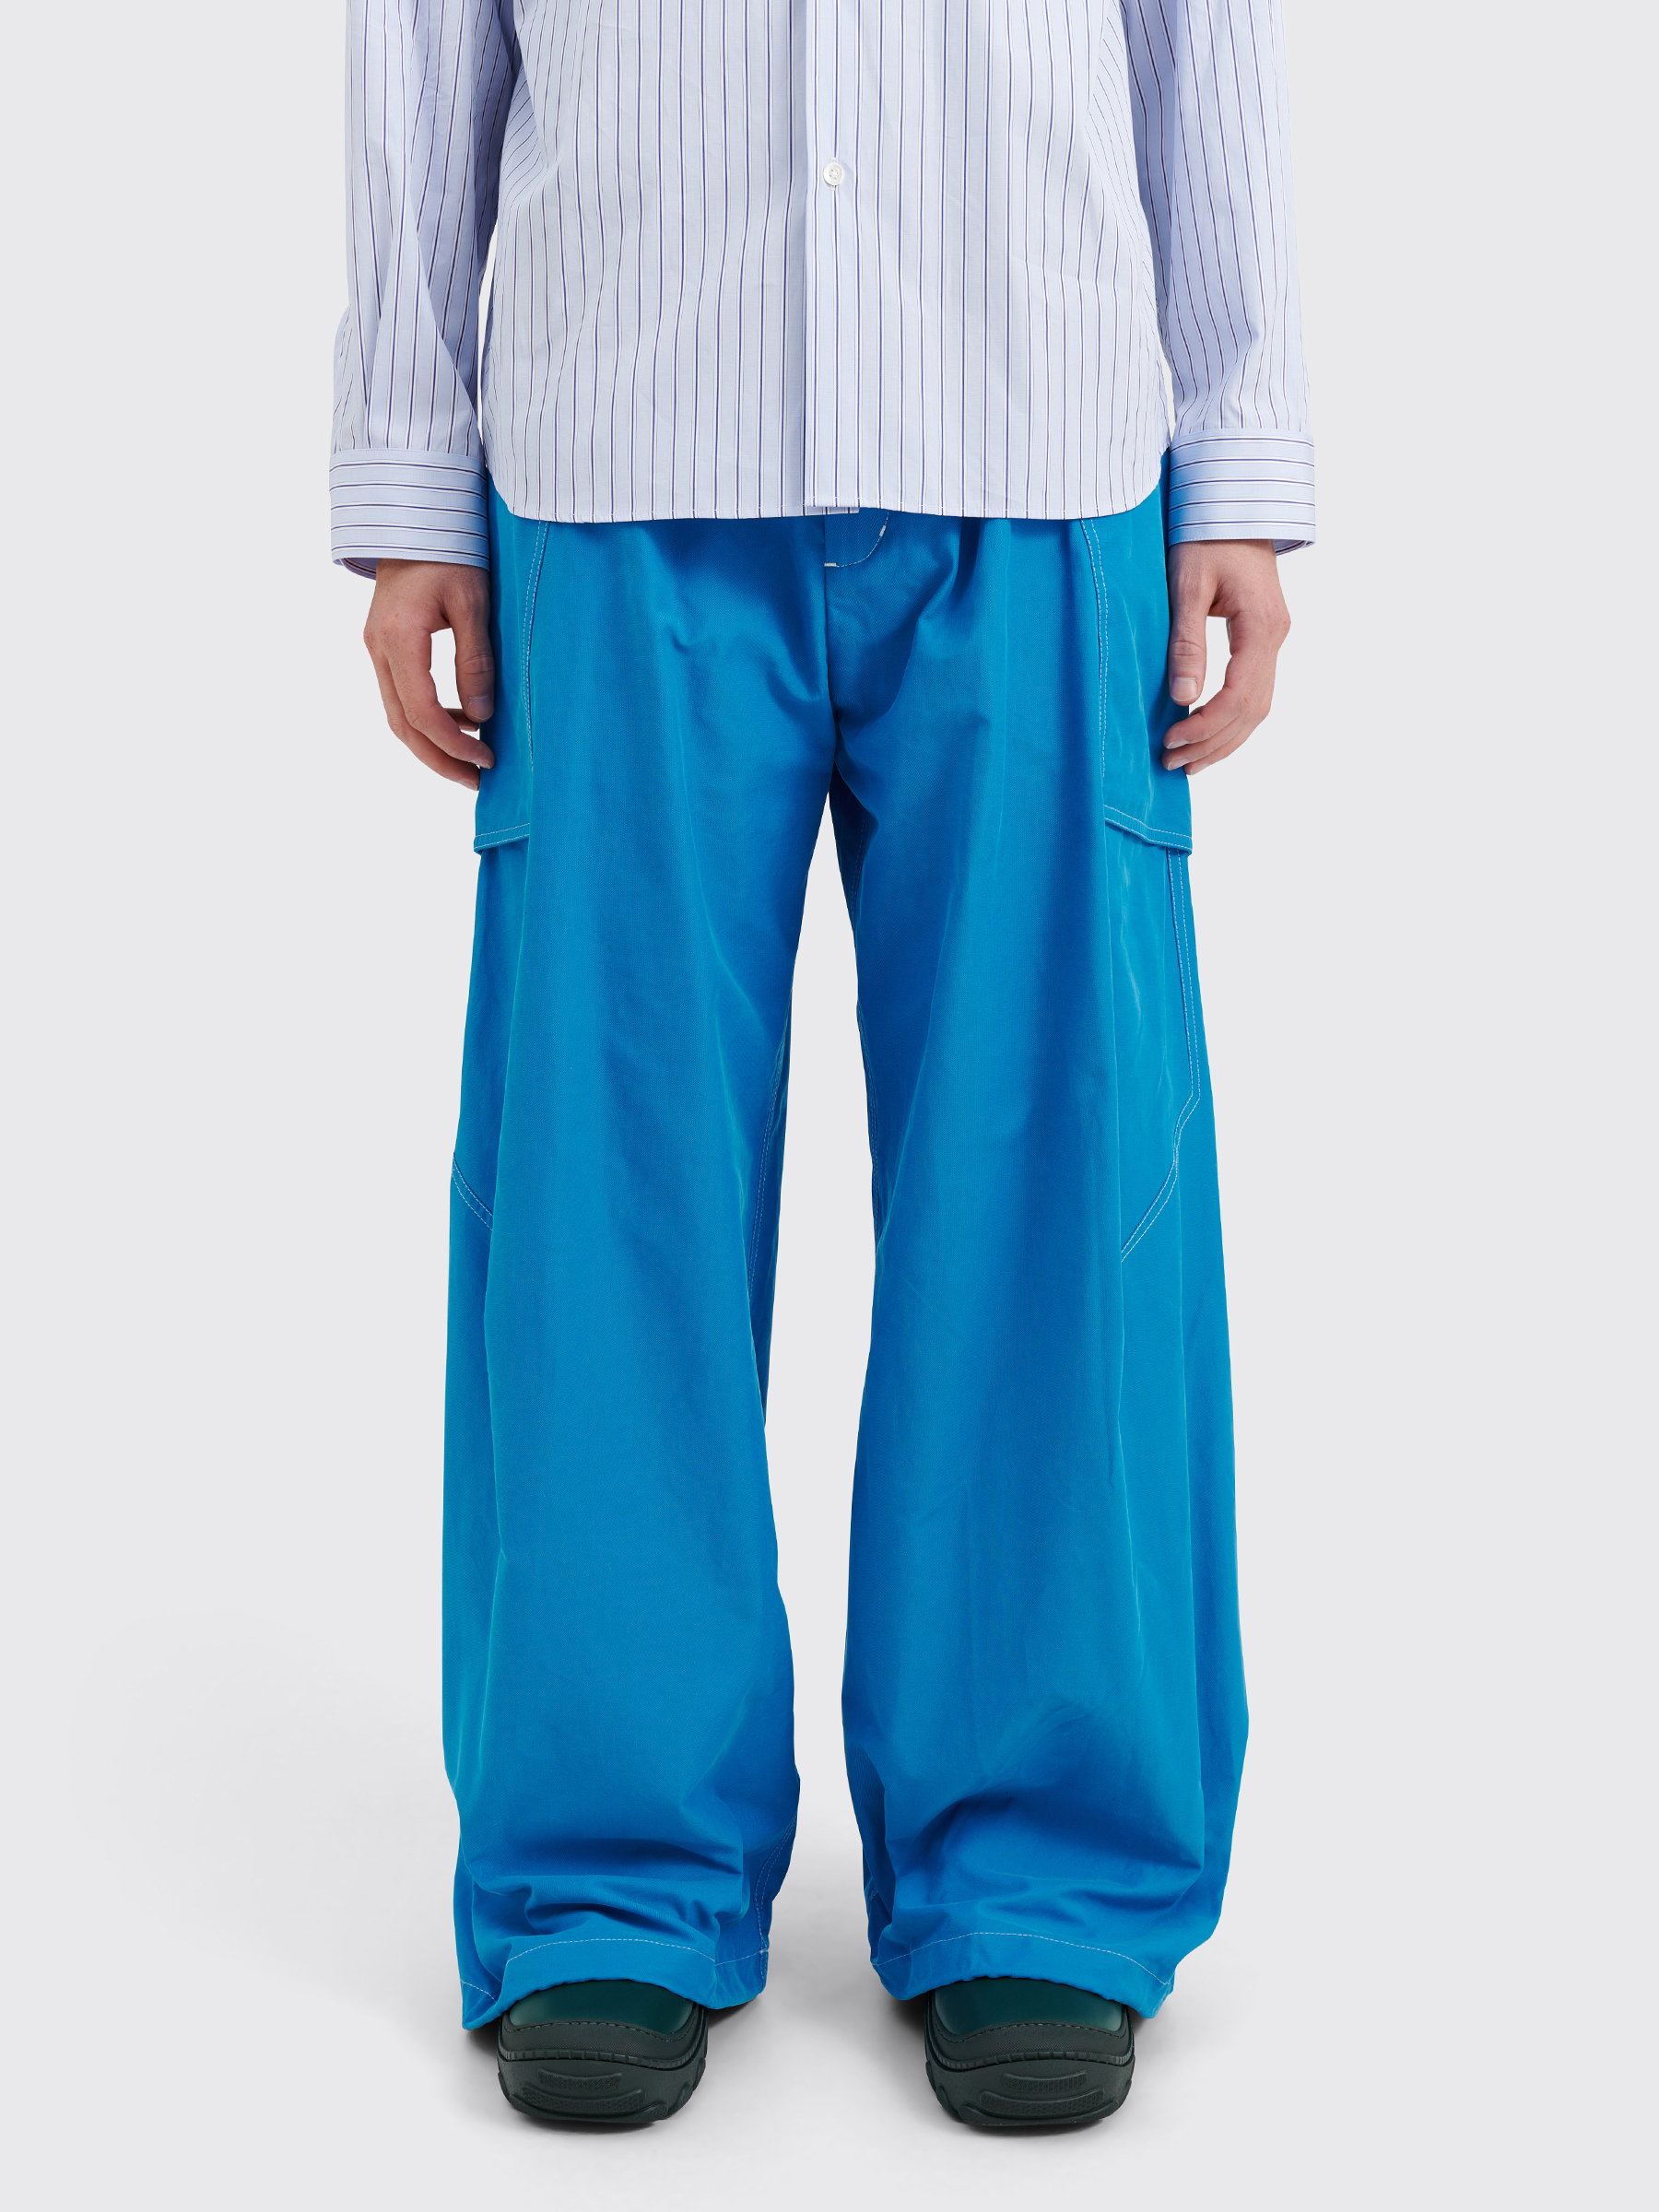 Très Bien - Kiko Kostadinov Meno Trousers Brushed Twill Cerulean Blue